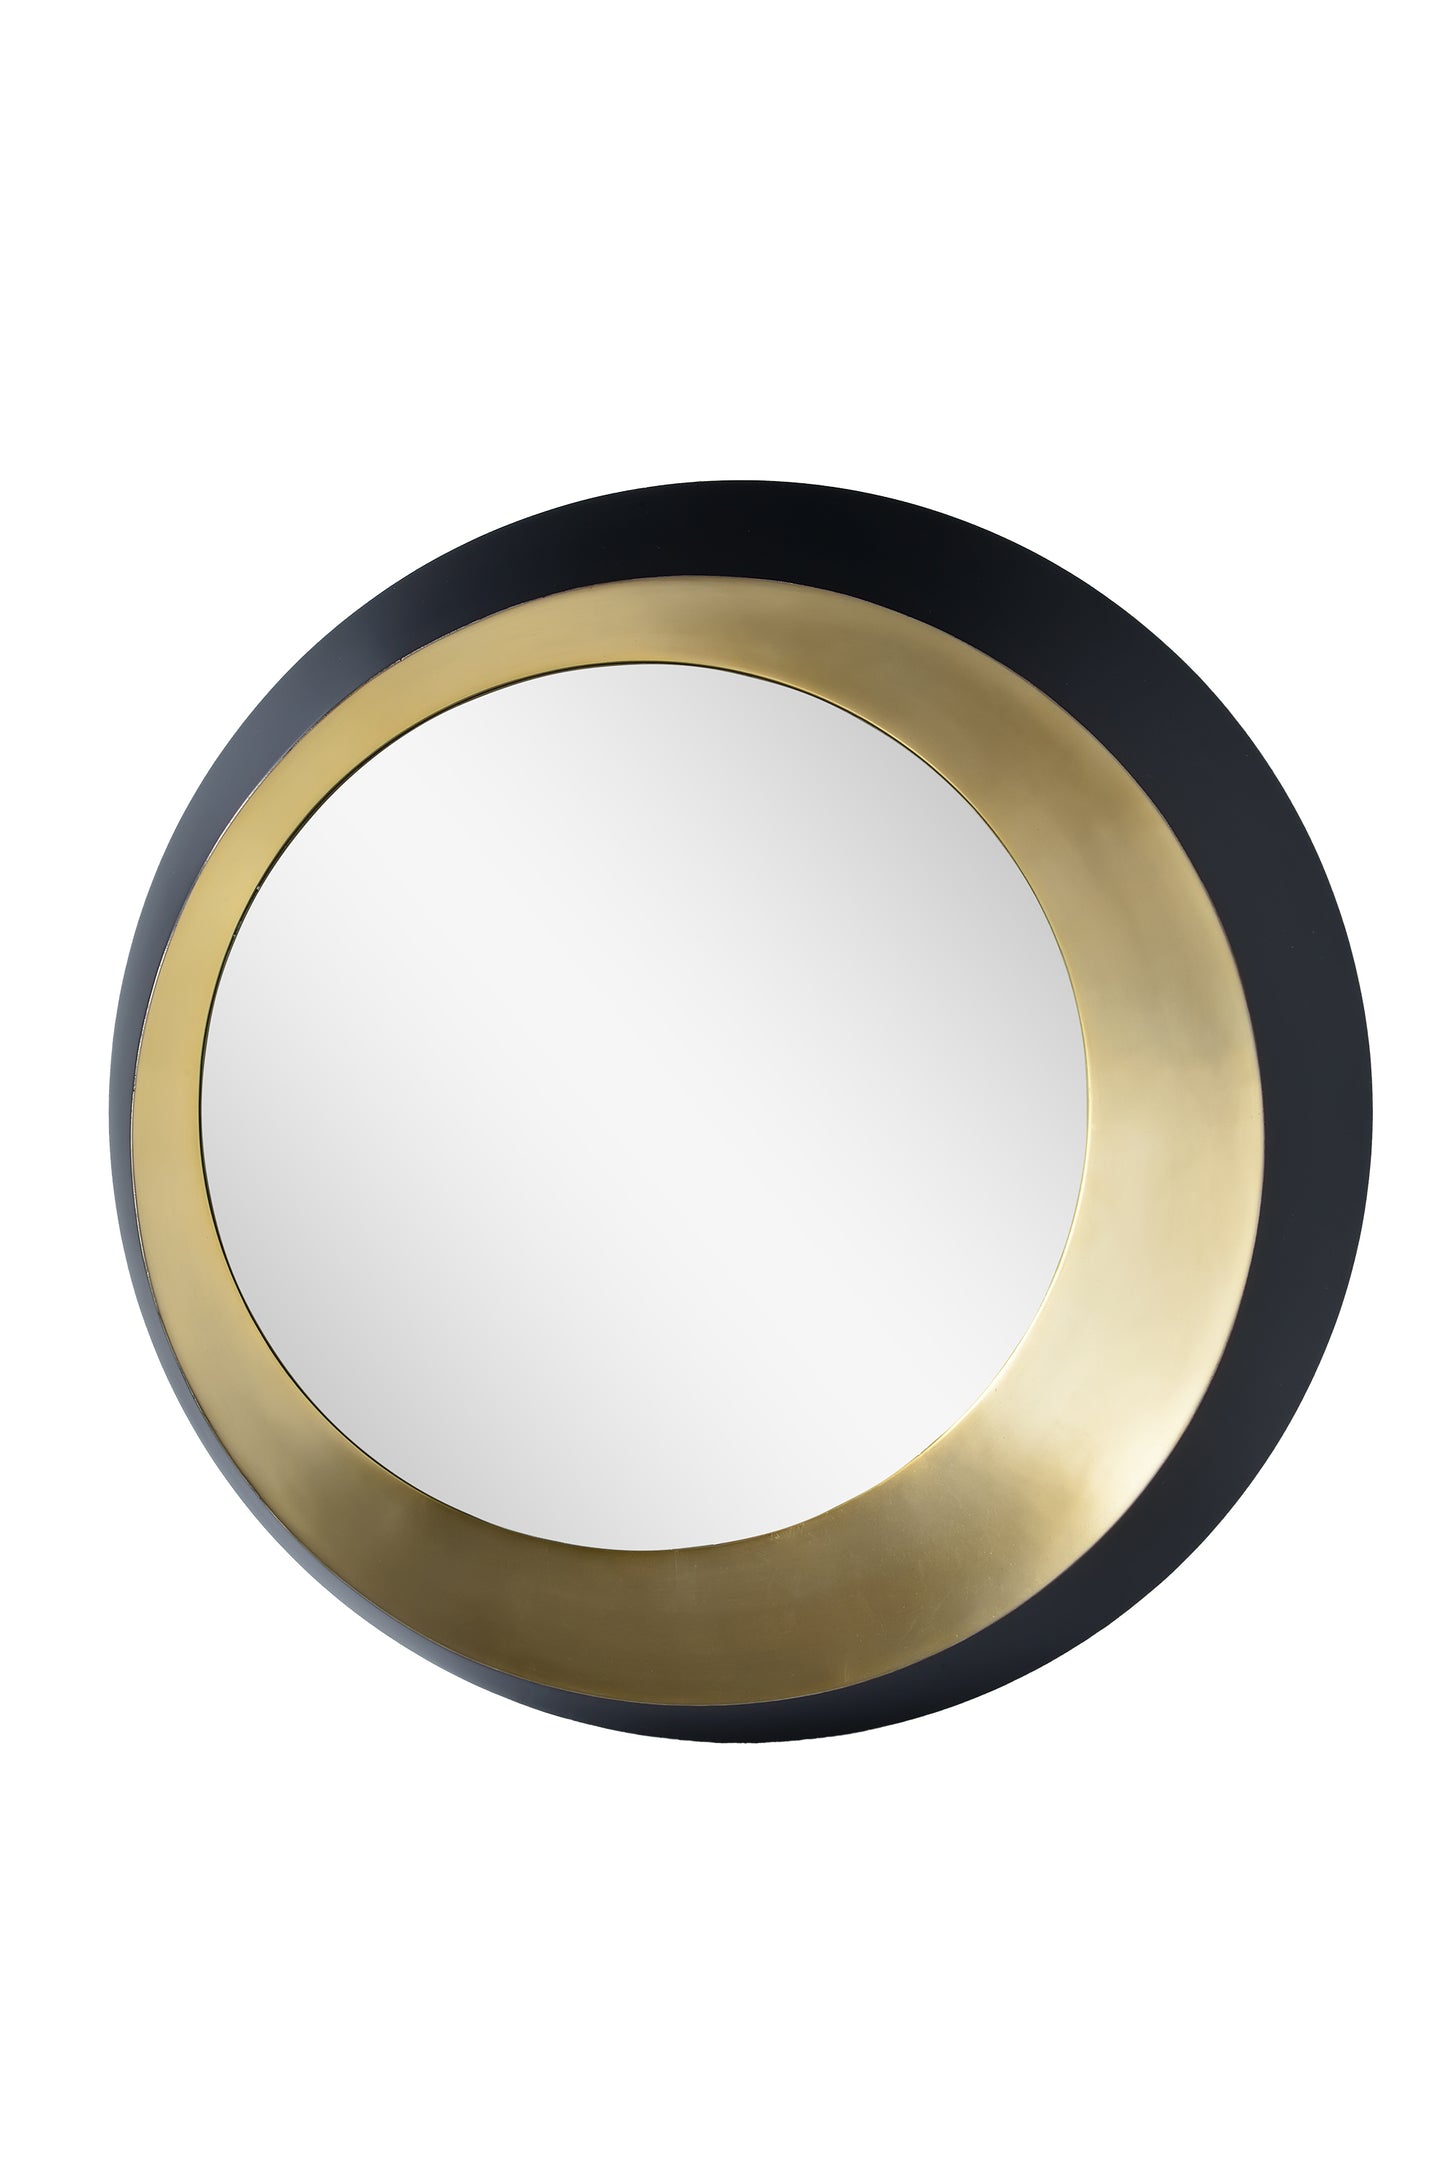 circular mirror